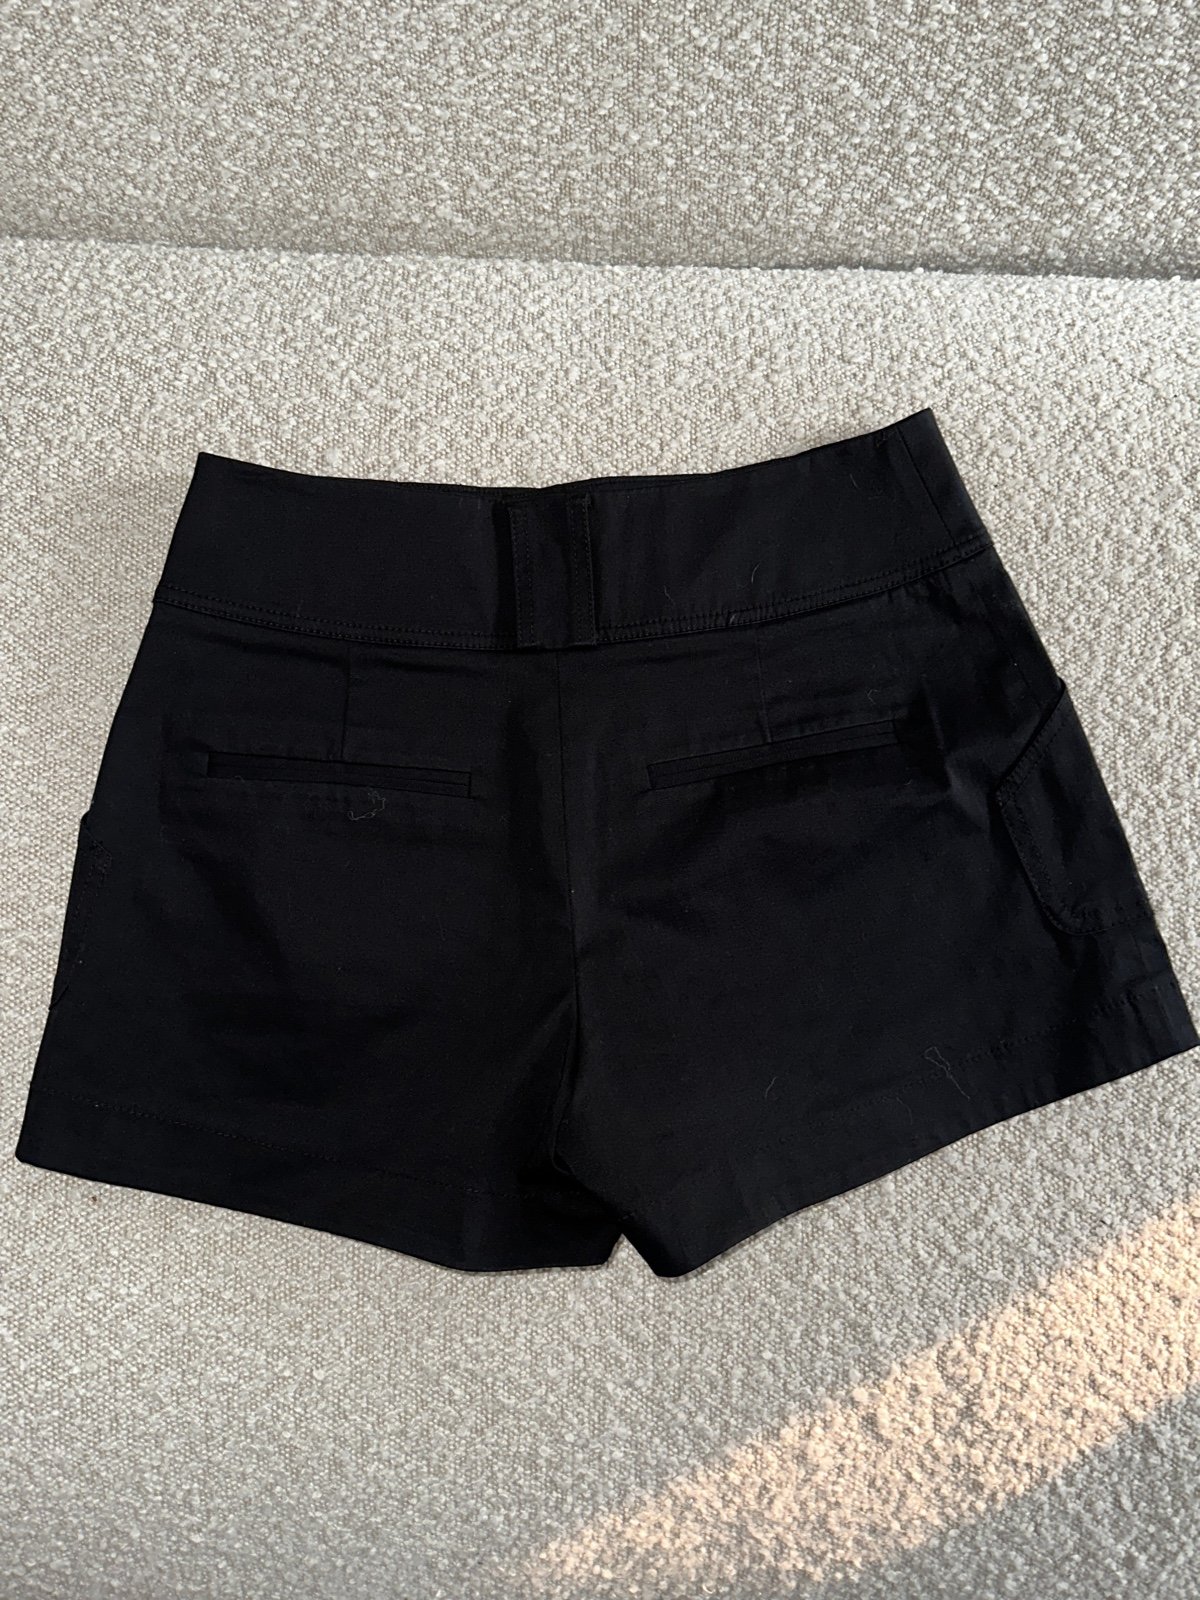 Buy Club Monaco short stretch Shorts (6) oeZB9AN6R Hot Sale